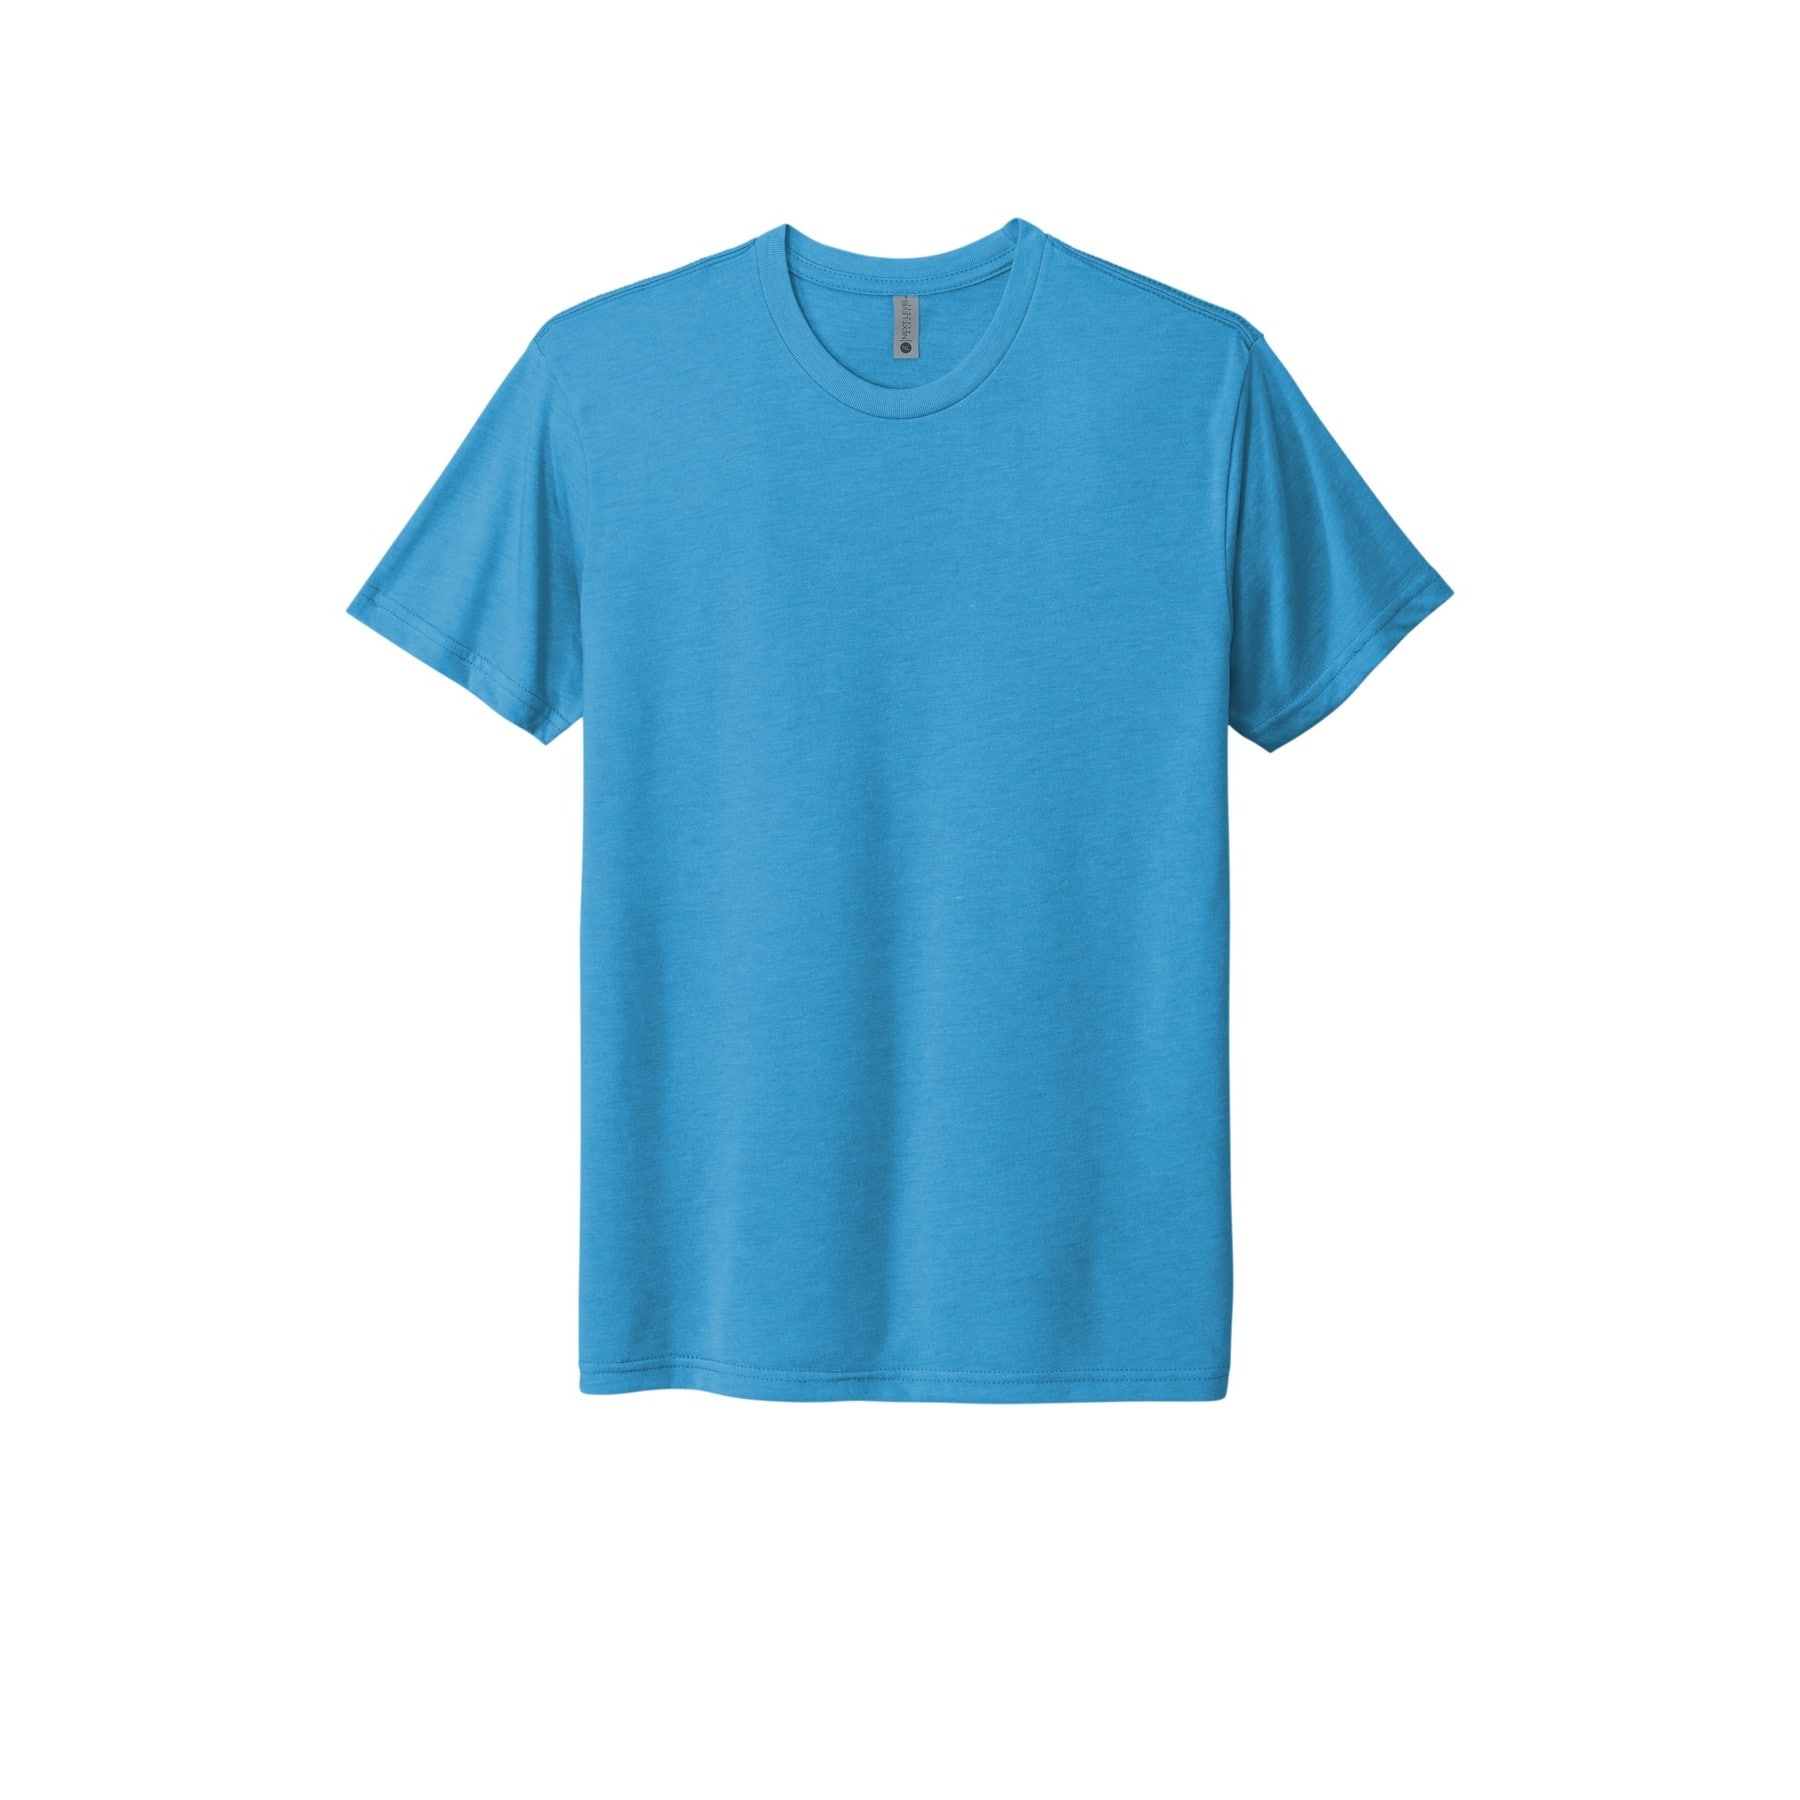 Next Level Vintage Colors Unisex Tri-Blend T-Shirt